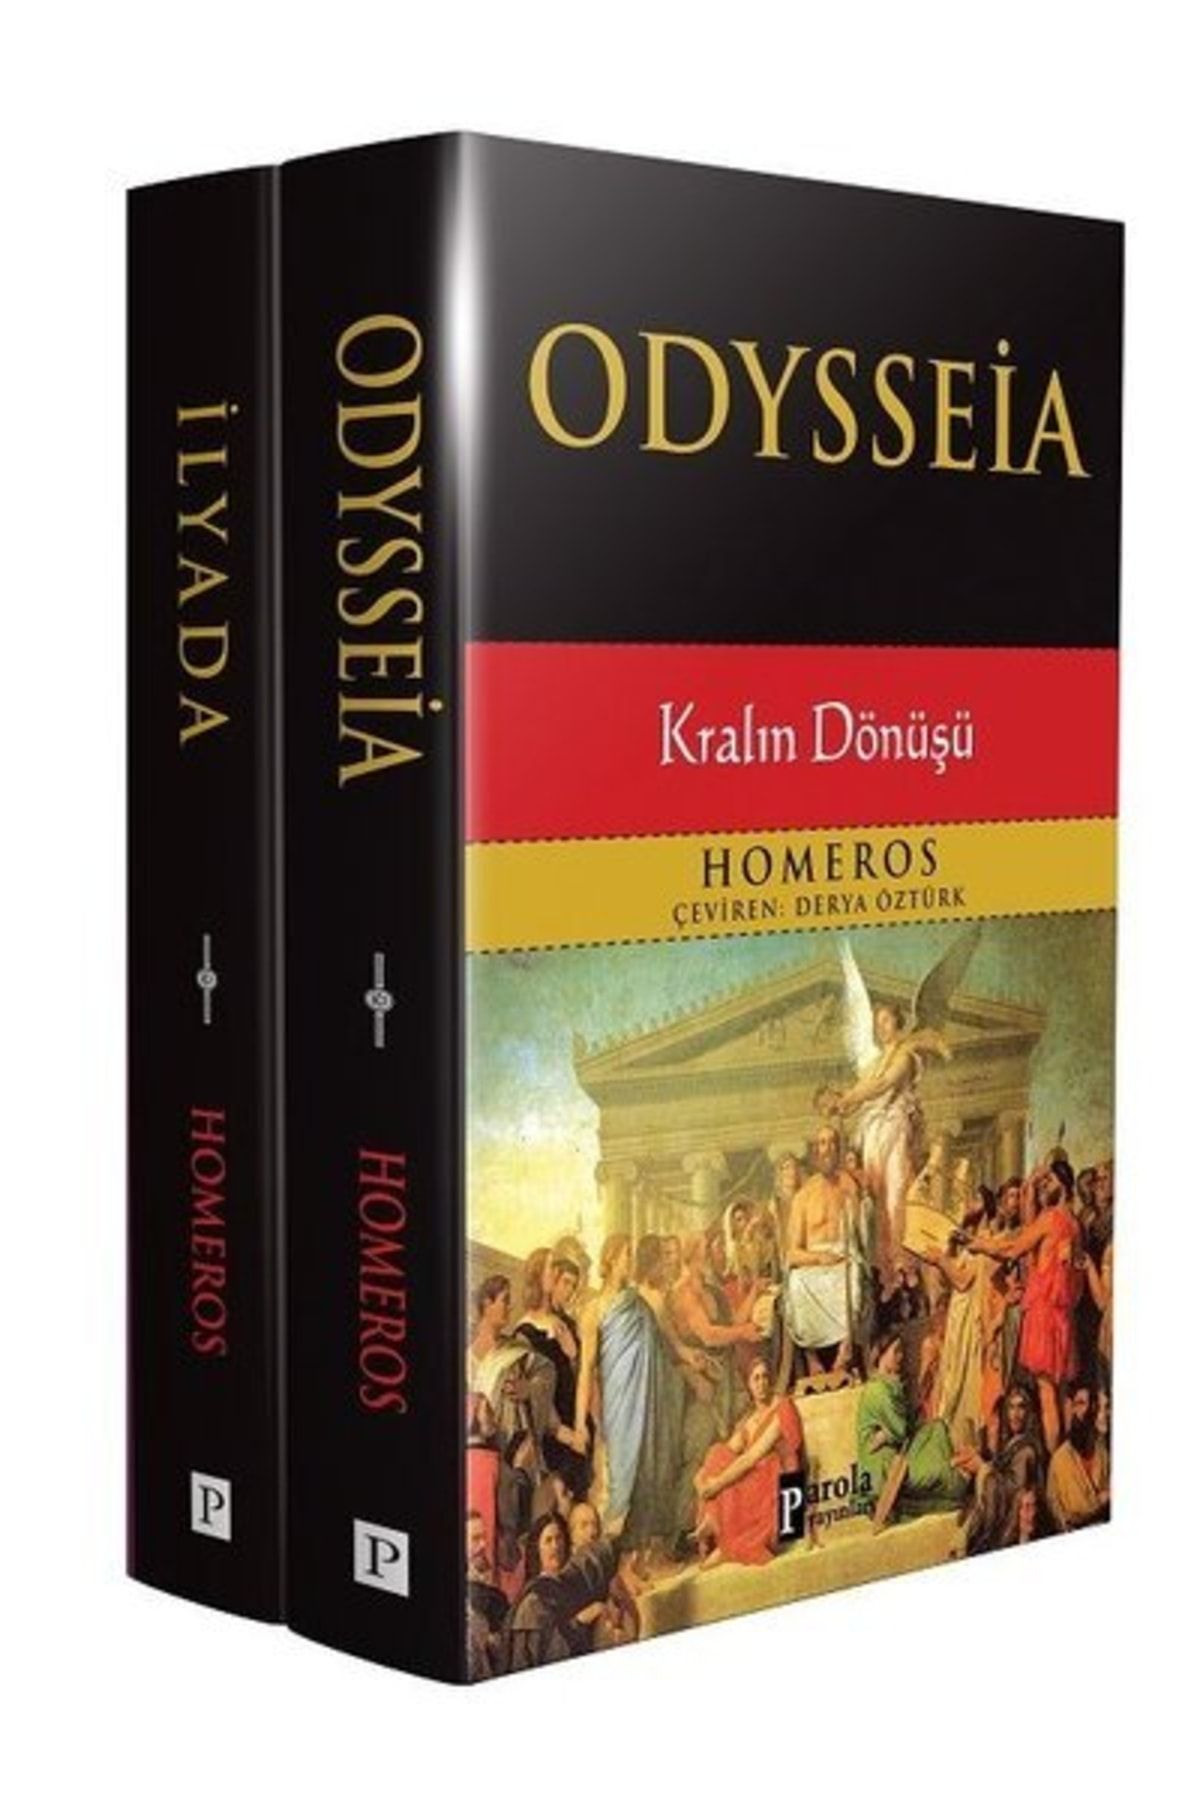 Parola Yayınları Homeros, Ilyada Ve Odysseia Seti - 2 Kitap Takım